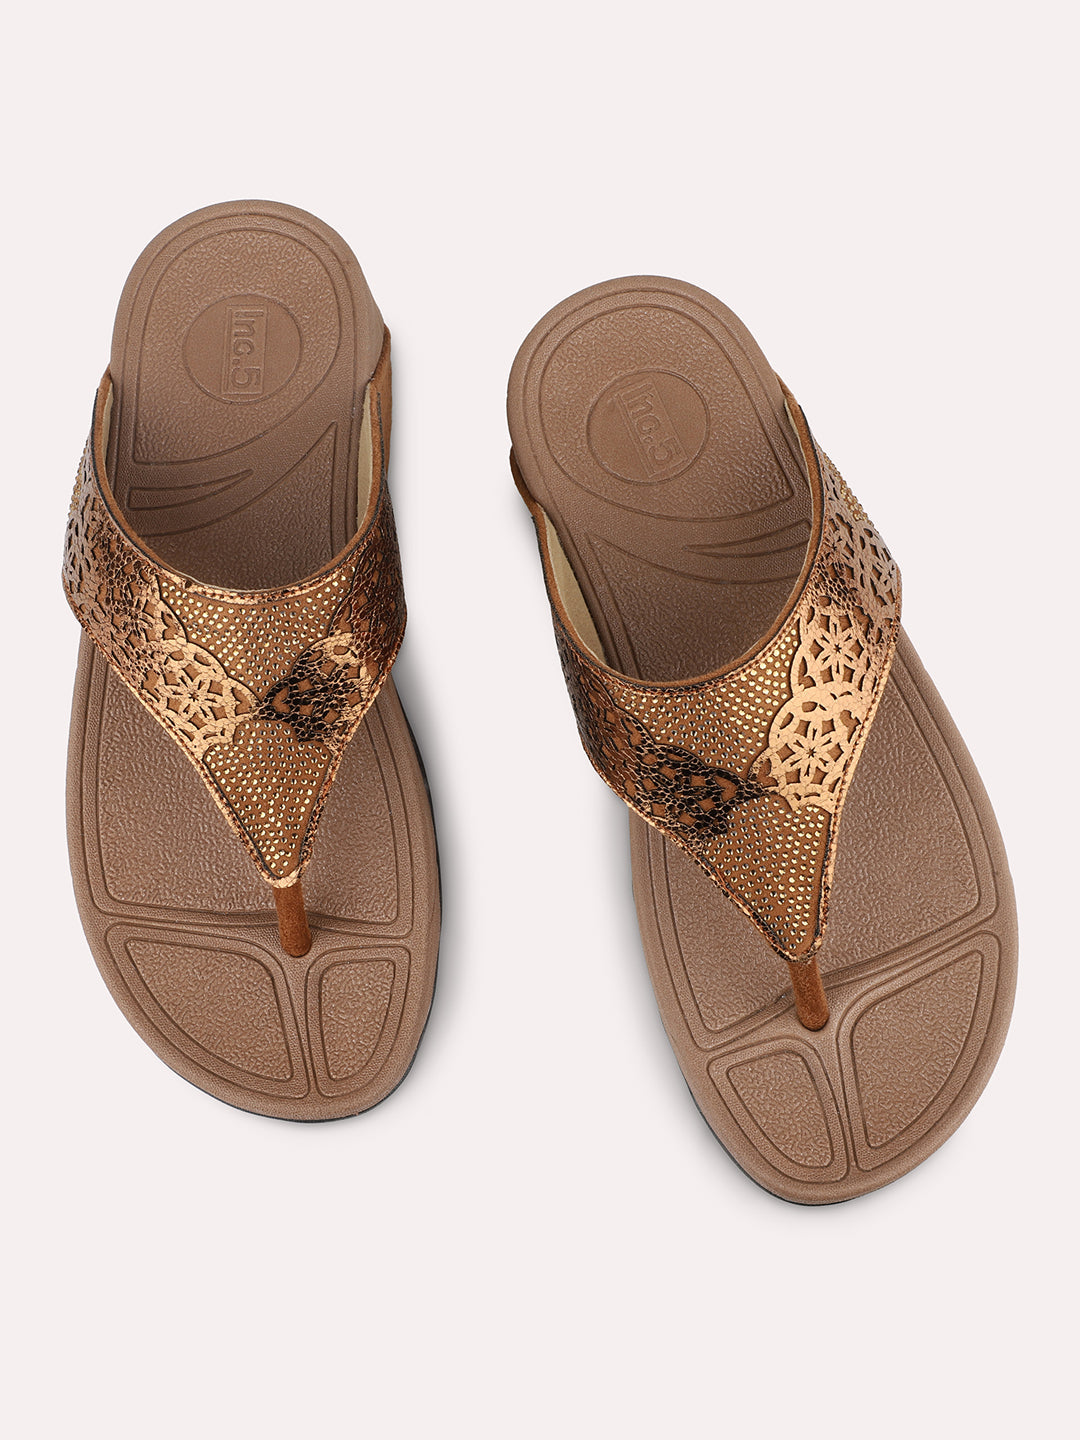 Women Antique Textured Embellished Open Toe Comfort Heels